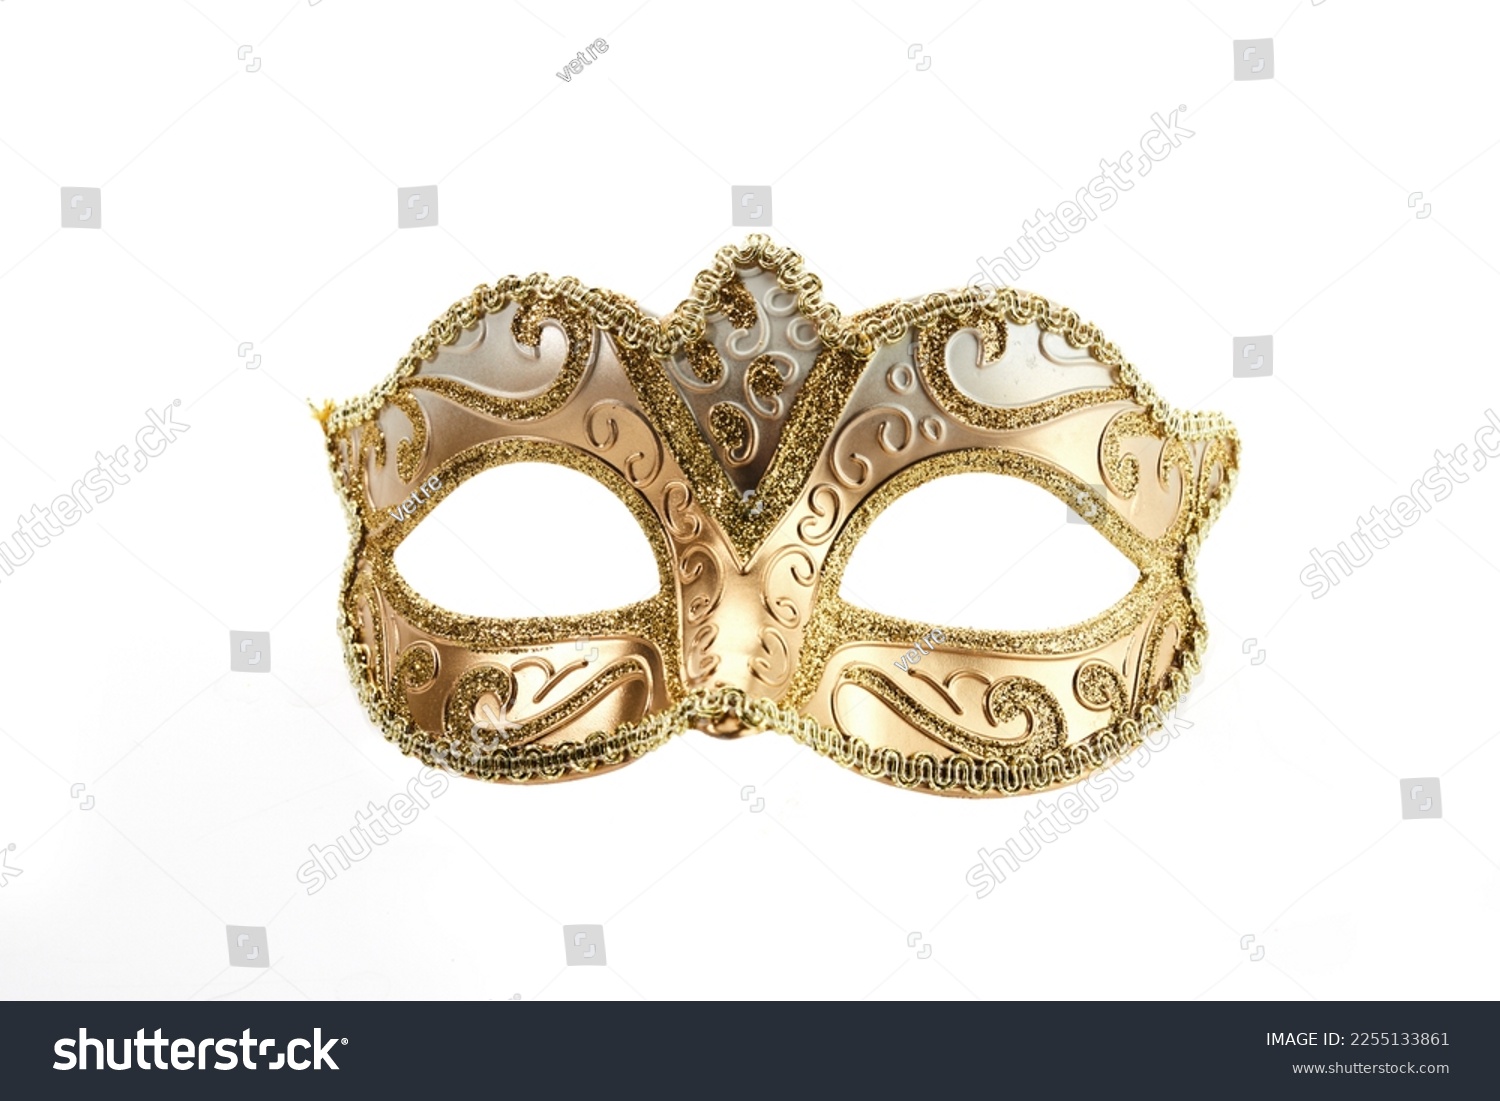 Mardi gras, Venetian mask isolated on white background. #2255133861